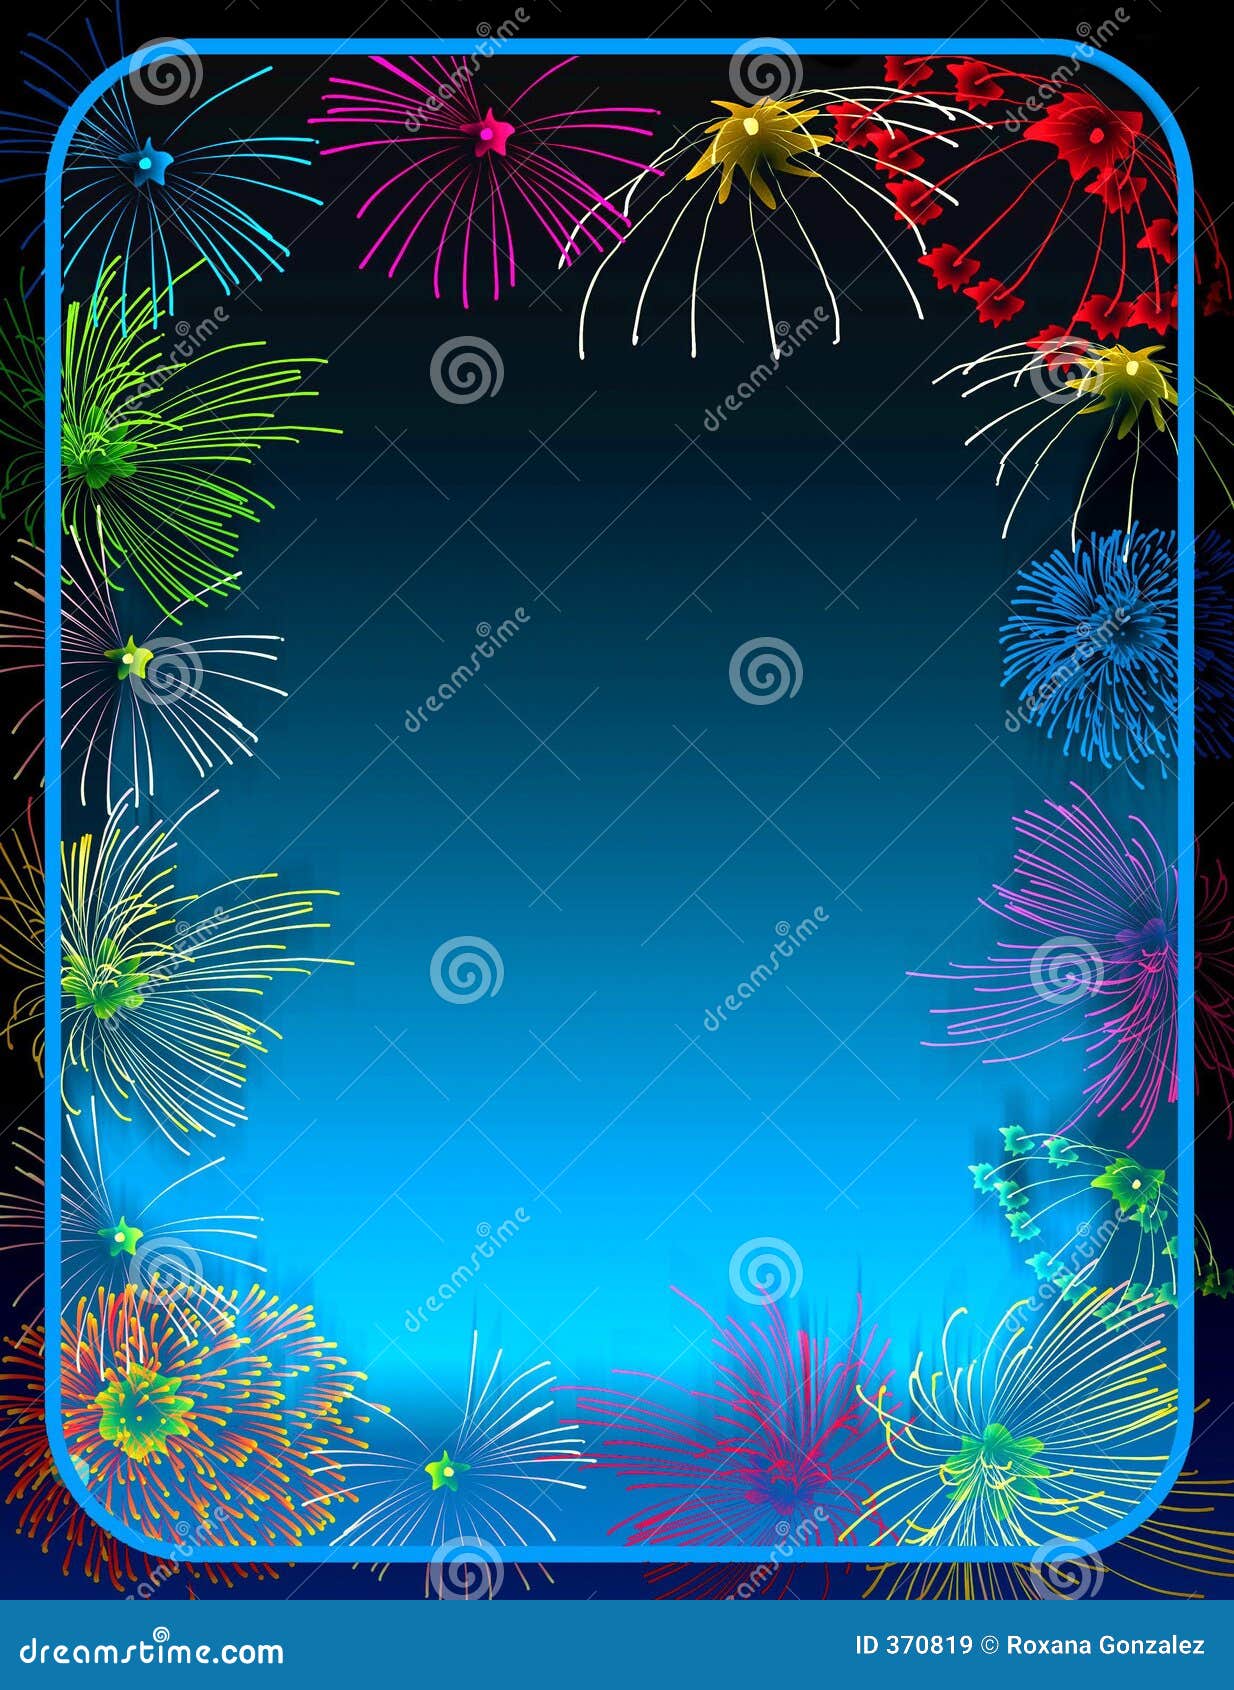 fireworks border clip art